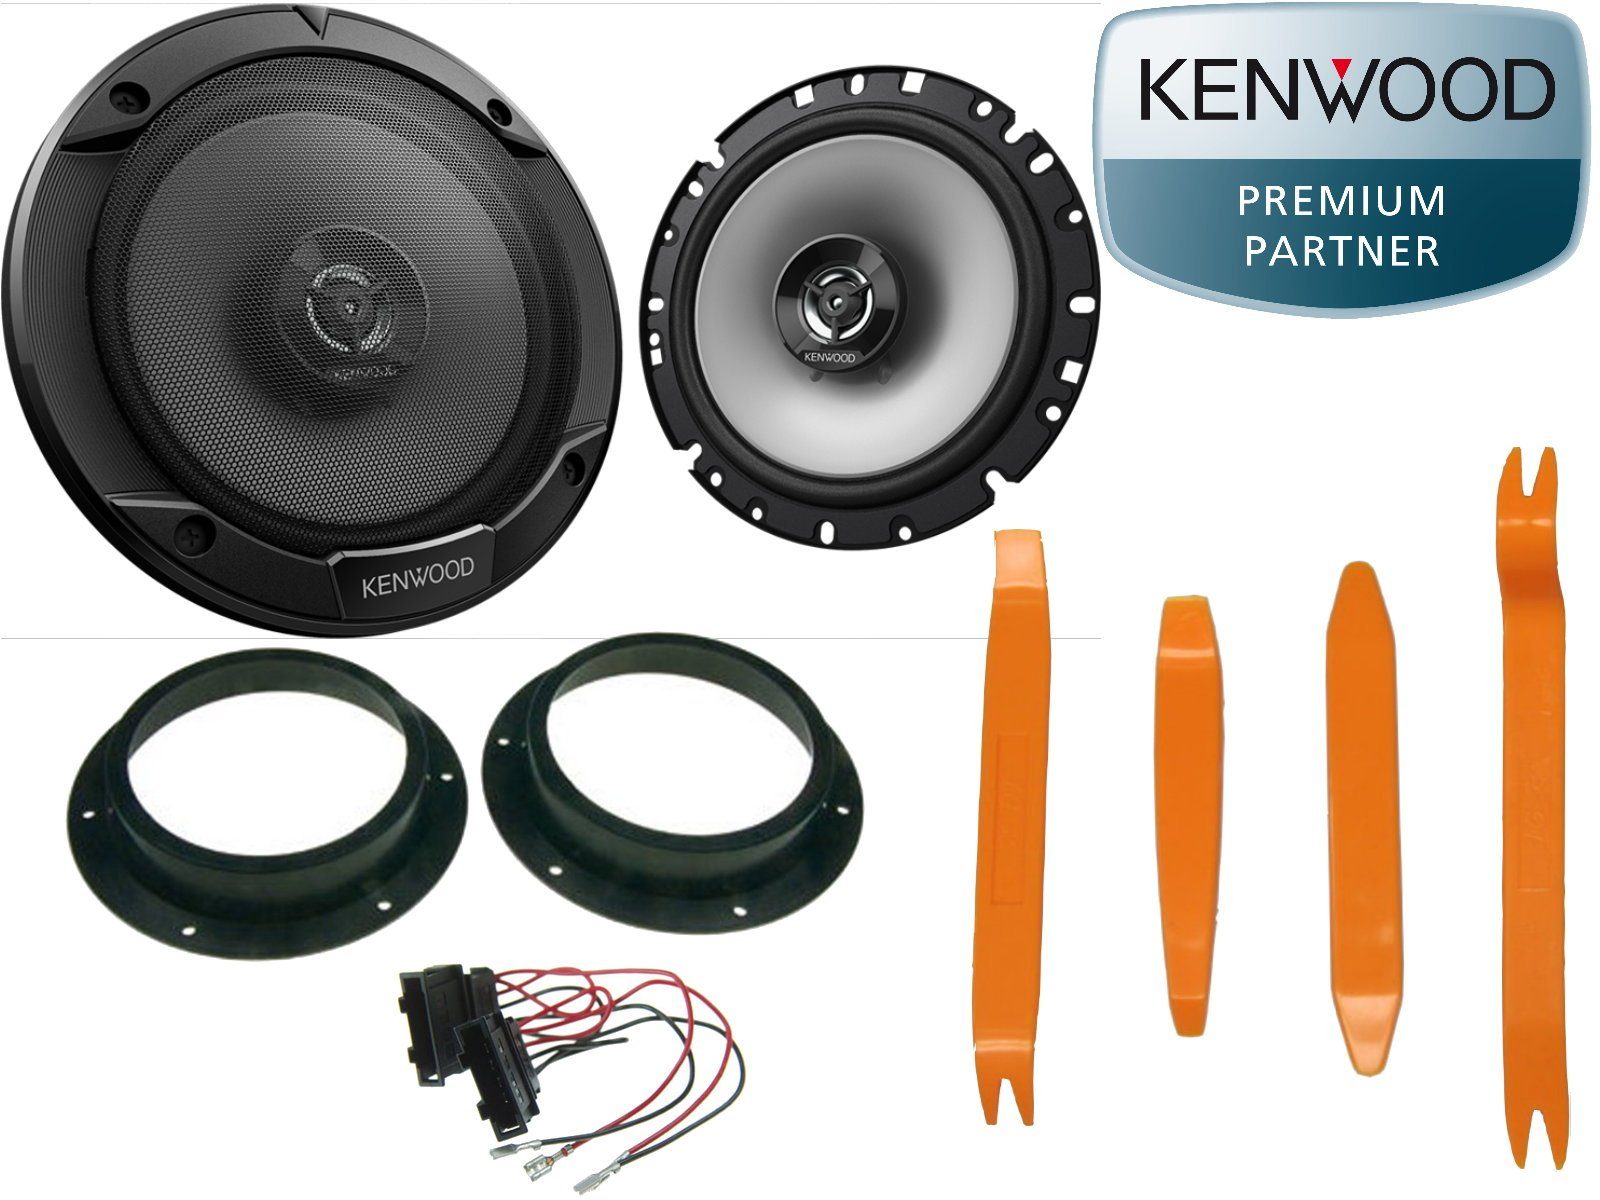 DSX Kenwood passend für VW Bus T5 T6 Set Tür 300 Watt + Ausbau Hebel Auto-Lautsprecher